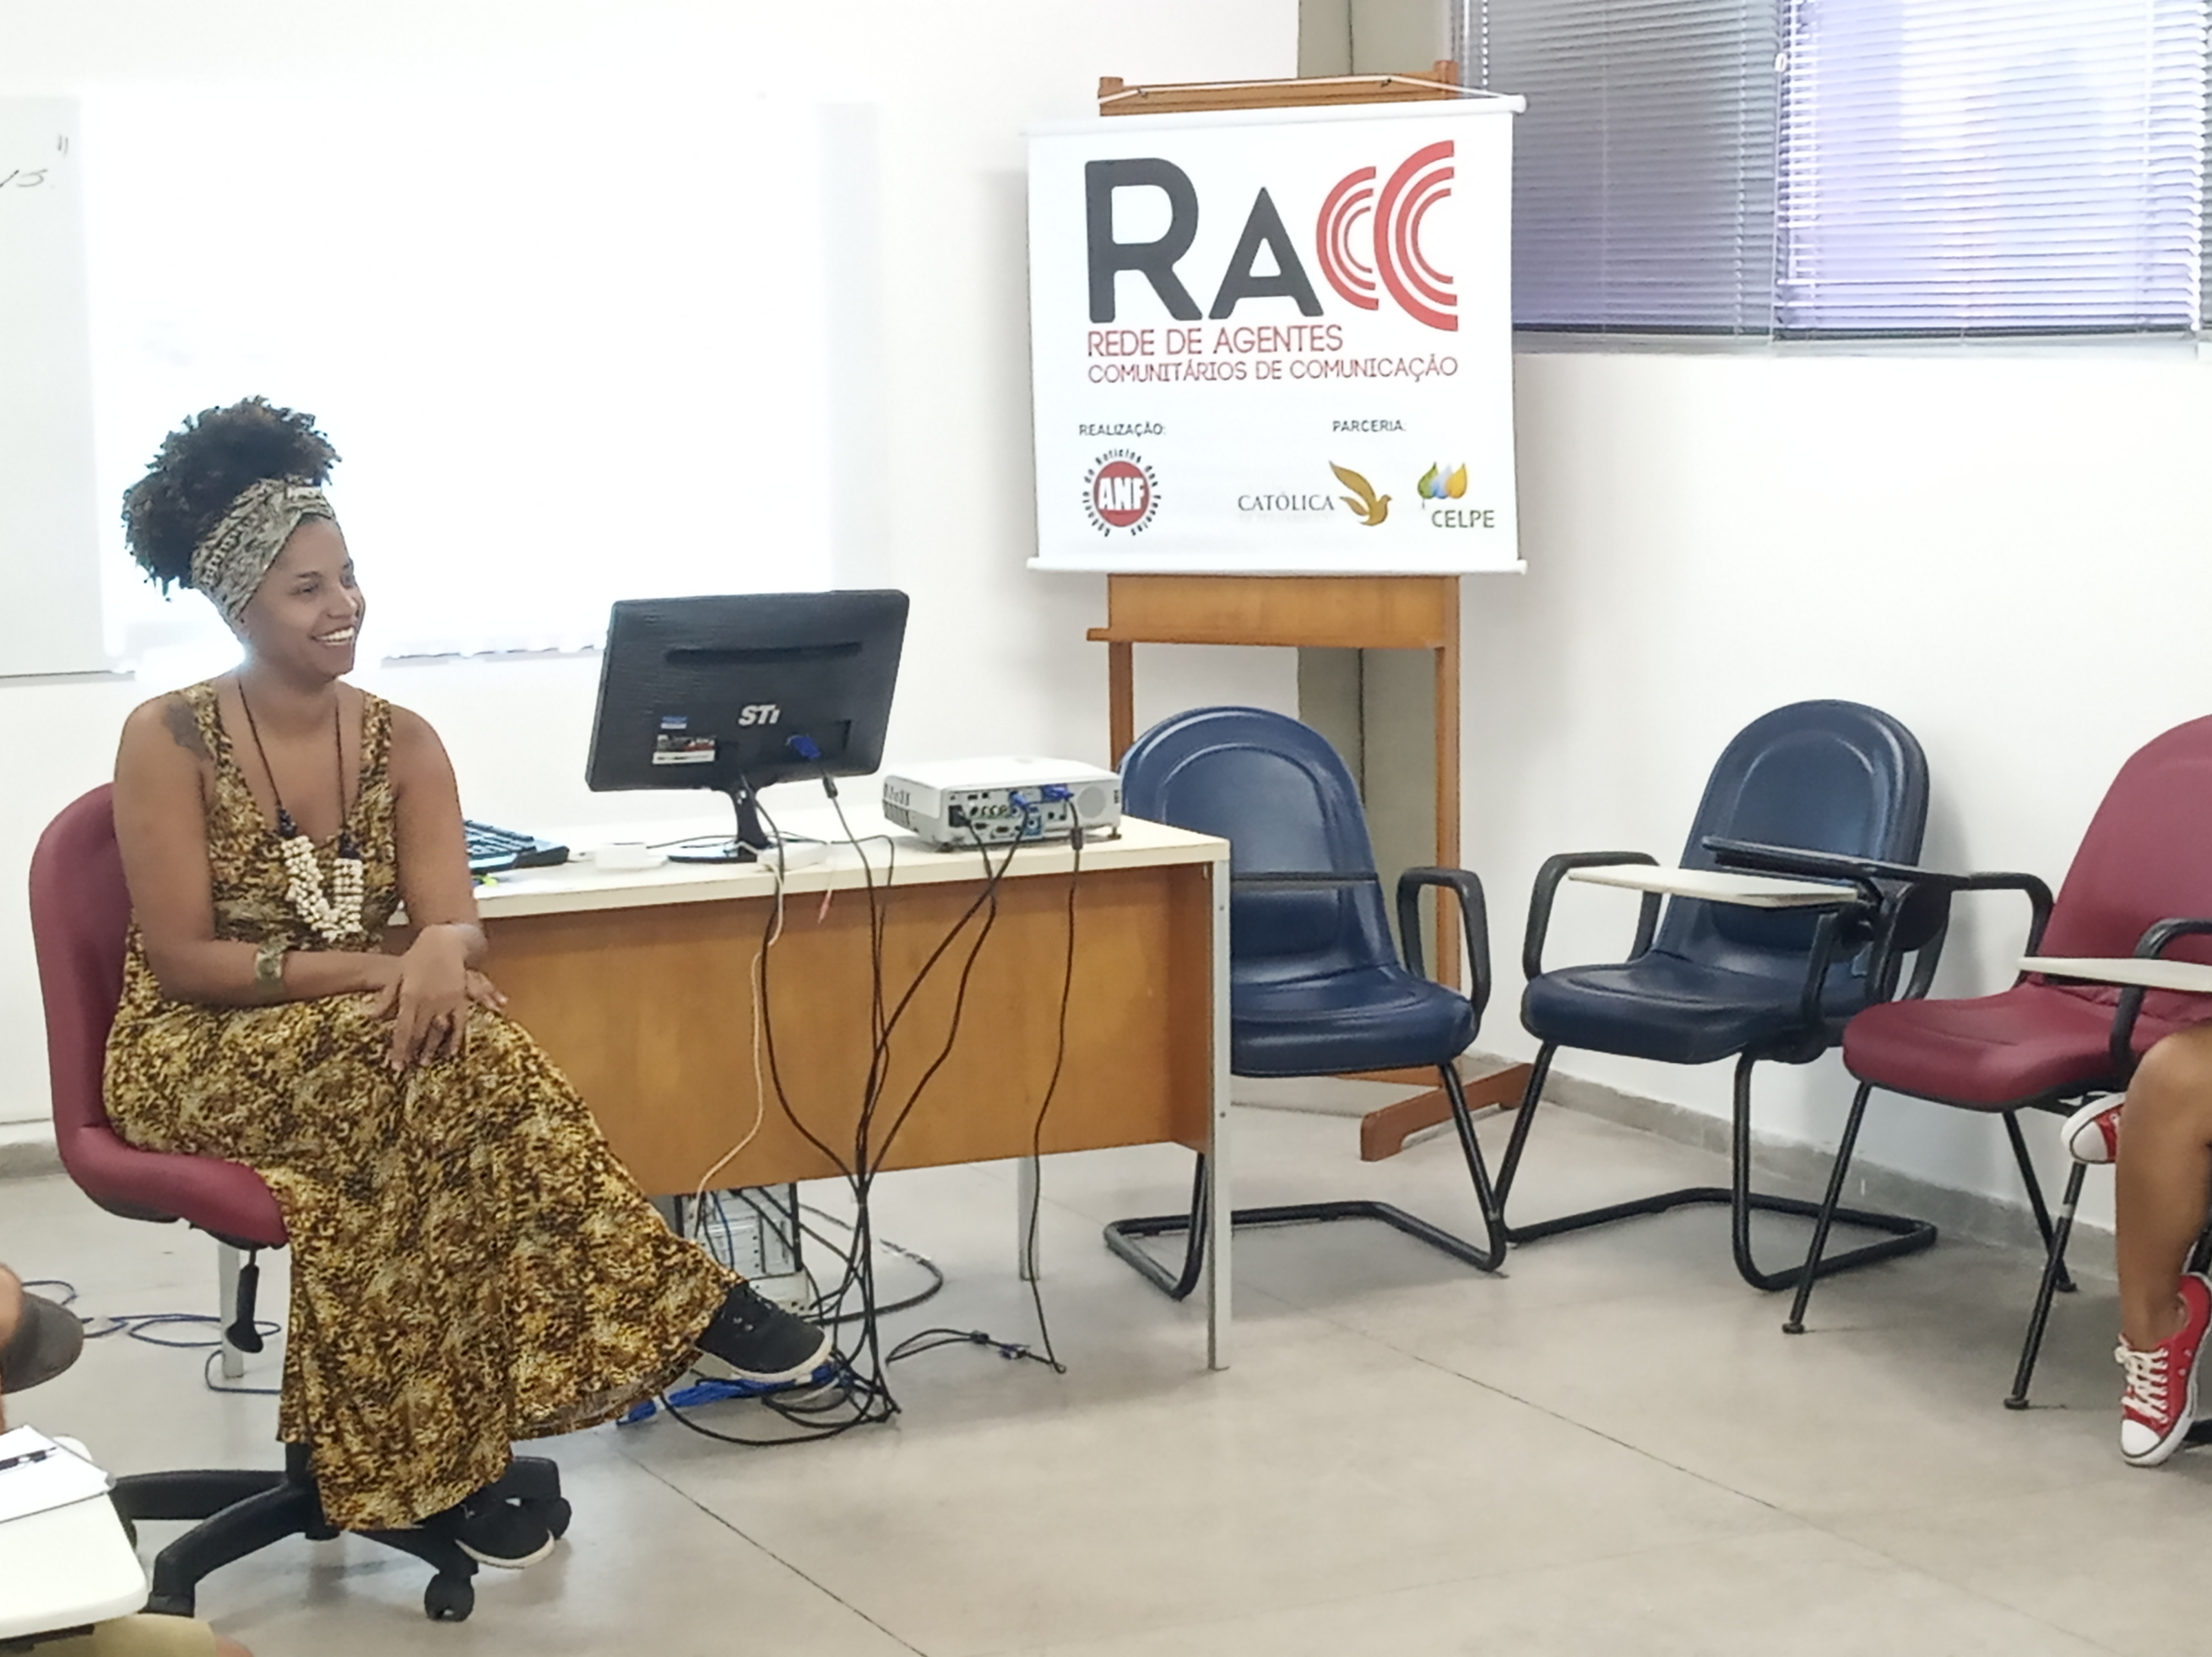 Quinto encontro da RACC em Recife discute comunicação comunitária e reportagem com celular